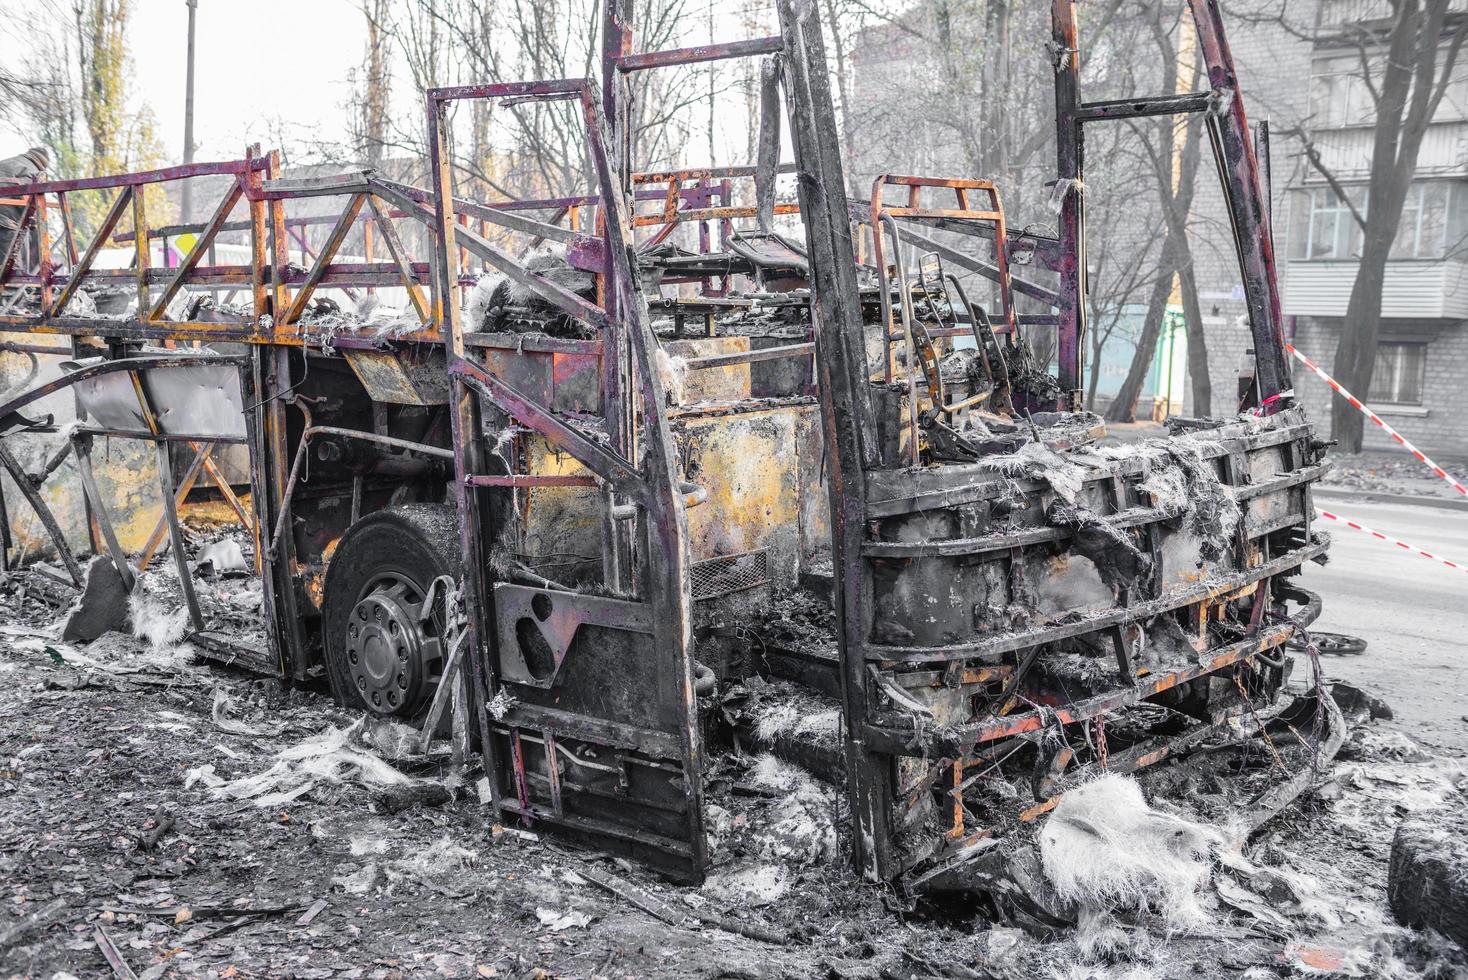 l'autobus bruciato è visto per strada dopo aver preso fuoco durante il viaggio, dopo l'incendio foto